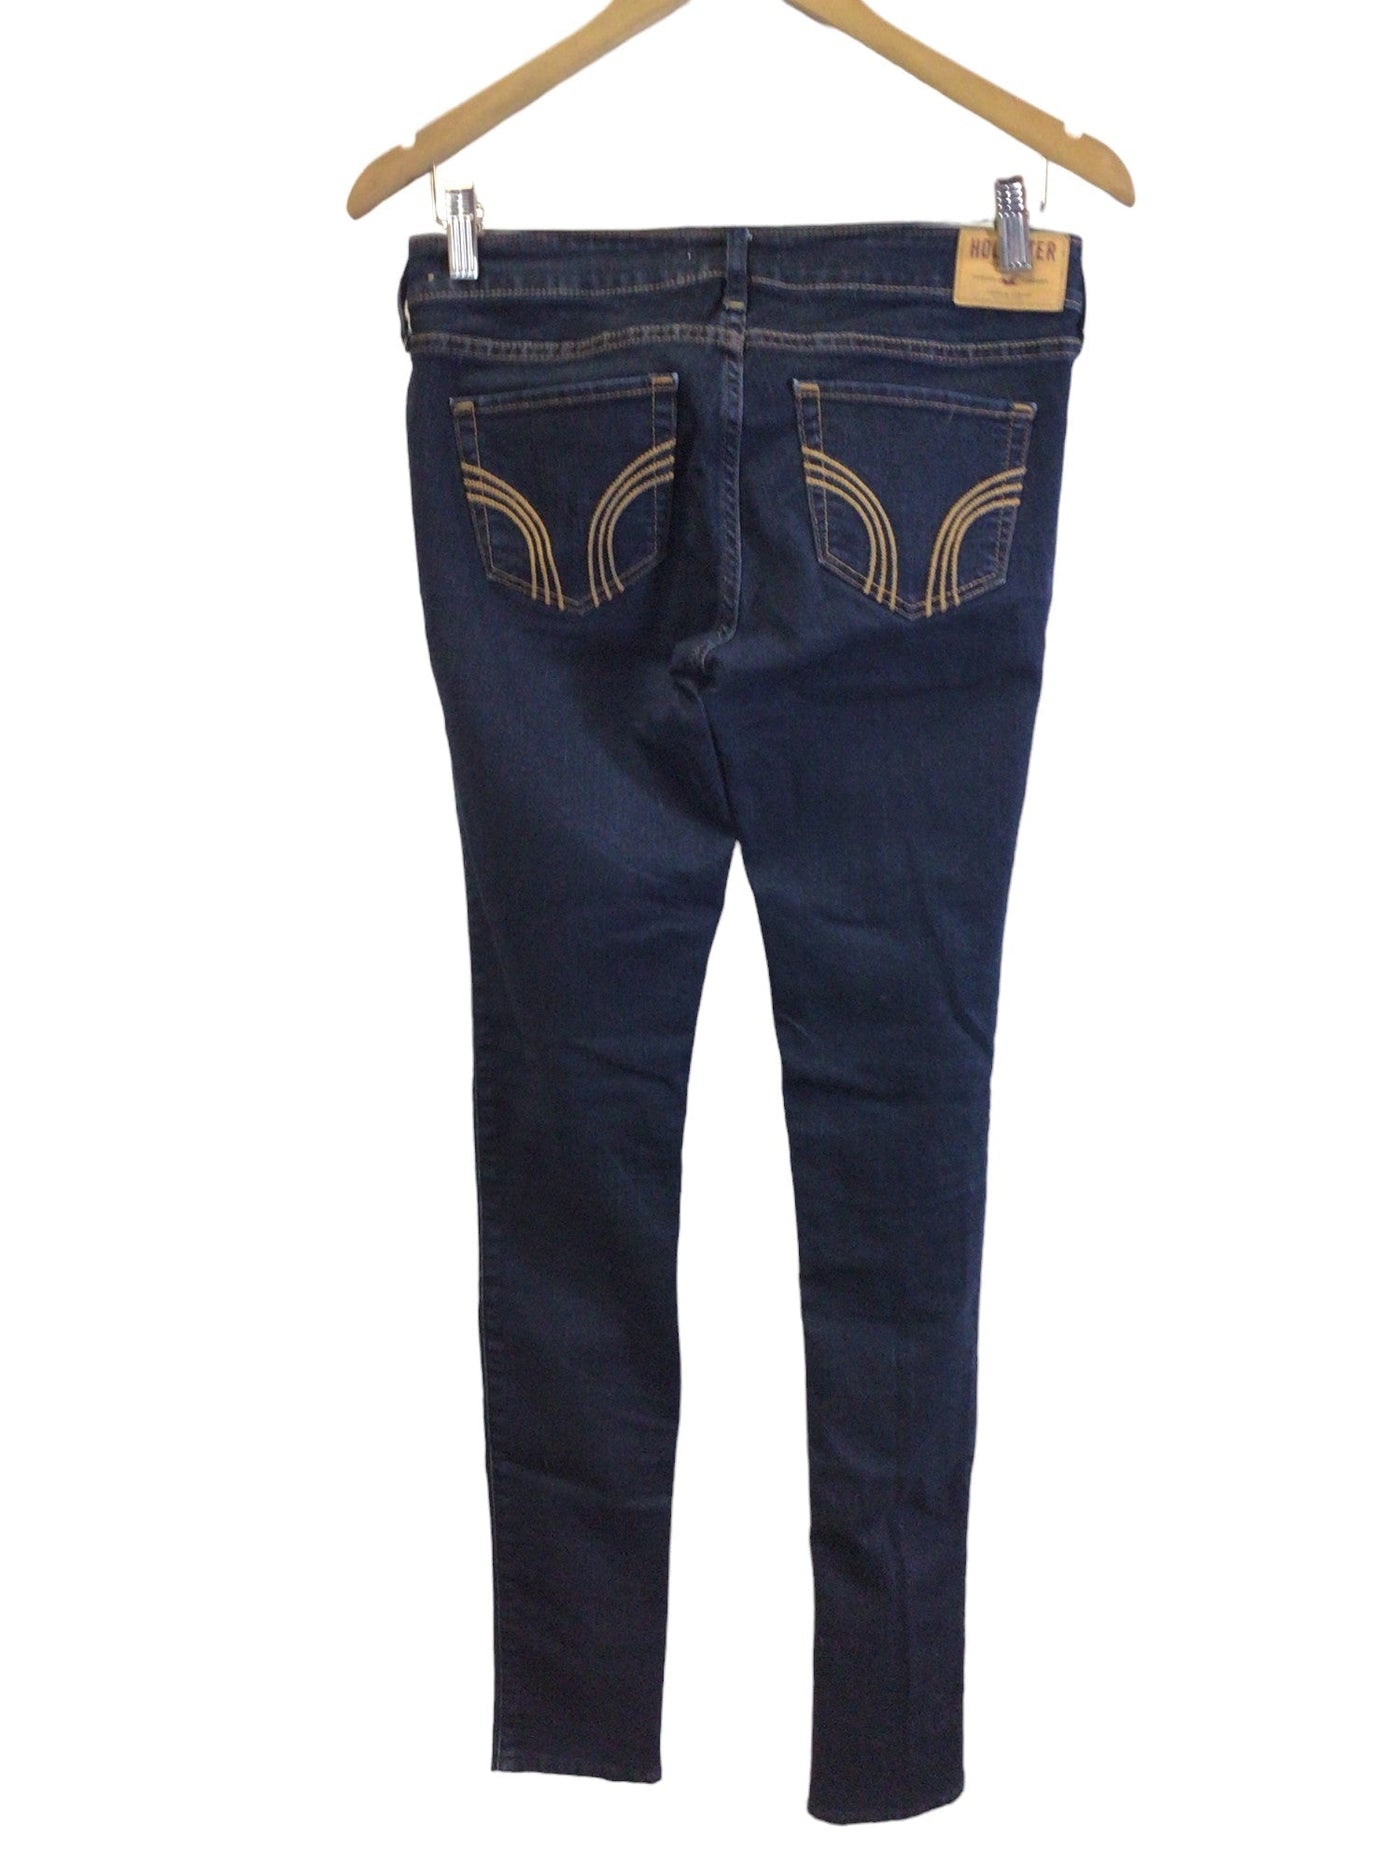 HOLLISTER Women Straight-Legged Jeans Regular fit in Blue - Size 26x33 | 15.95 $ KOOP